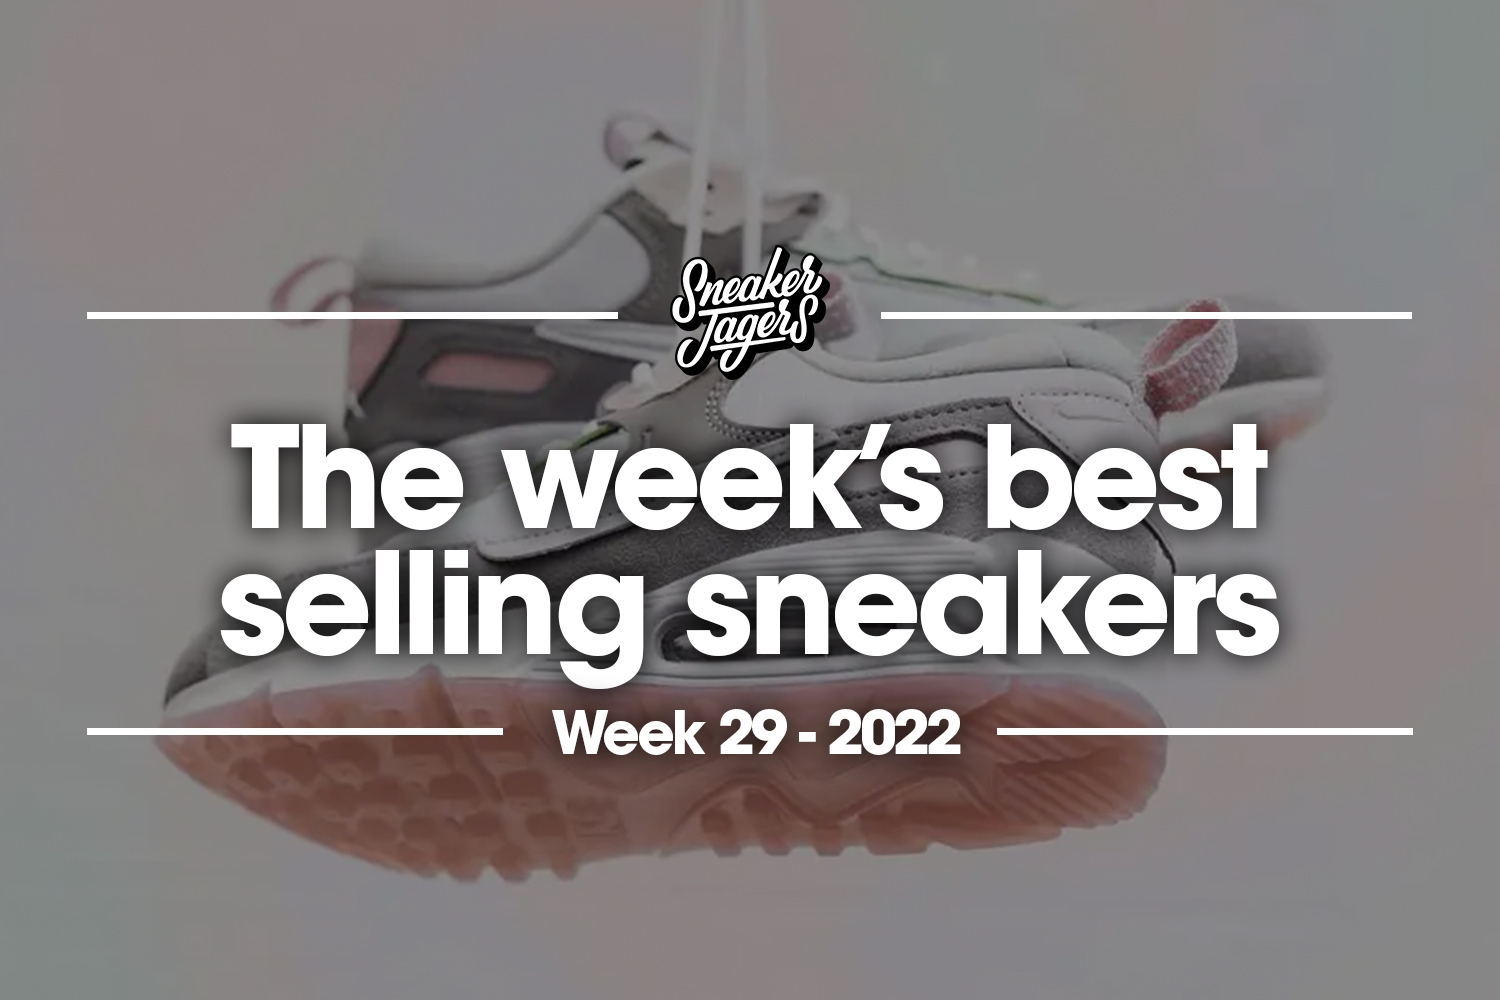 De 5 bestverkochte sneakers van WK29